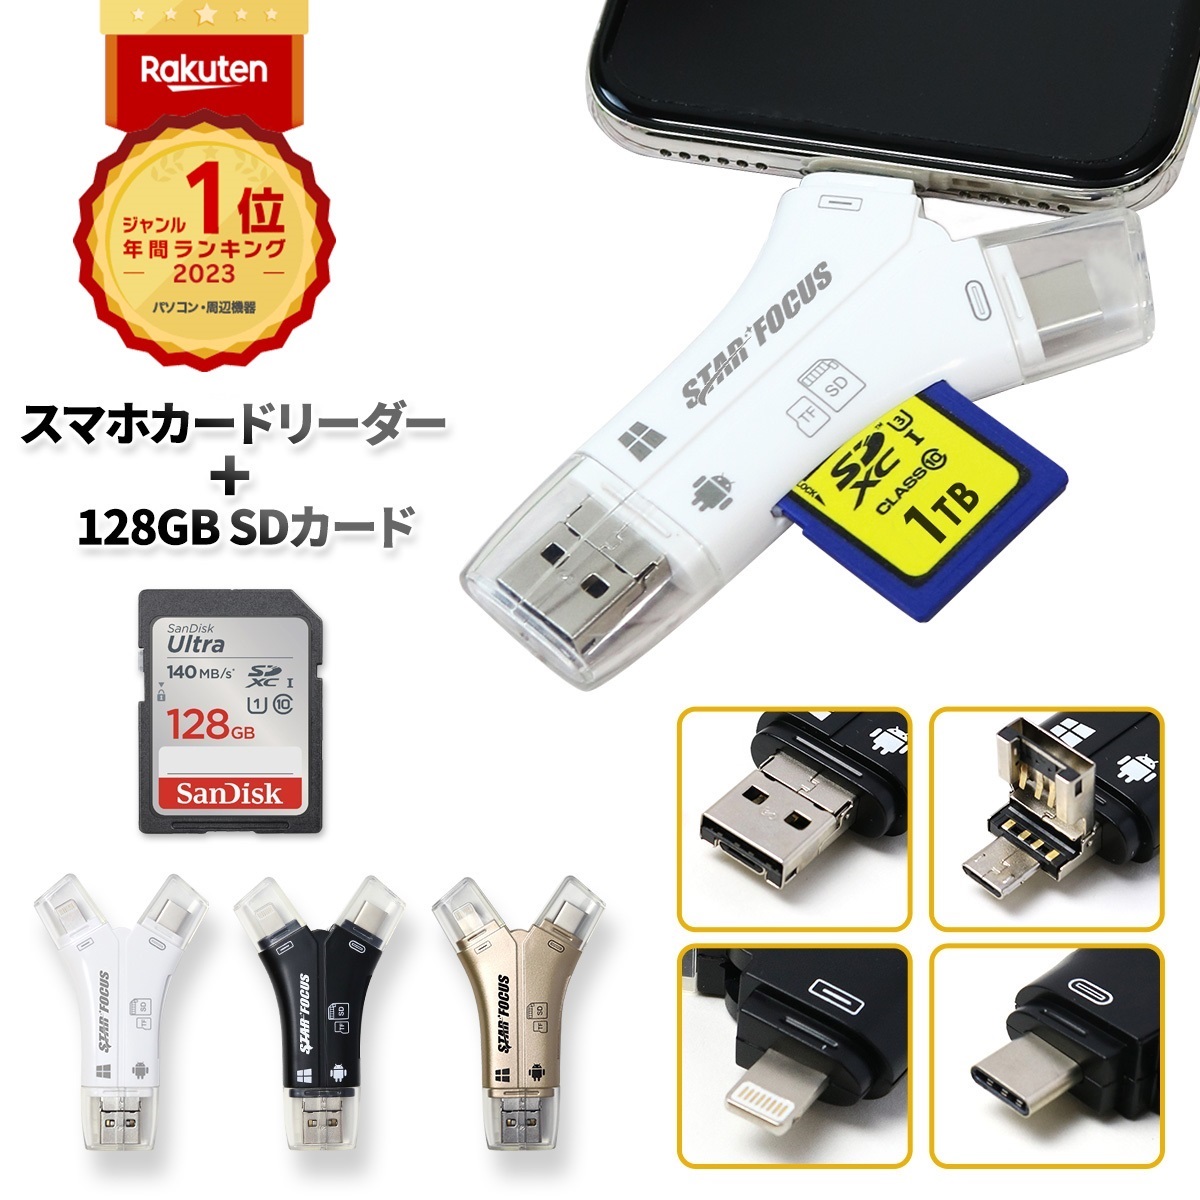 日本限定usbメモリ128GB」 usbメモリ Phone ipad対応 フラッシュドライブ アイフォン メモリ Phone 外付けメモリ  qzP0oUzFoL, USBメモリ - centralcampo.com.br